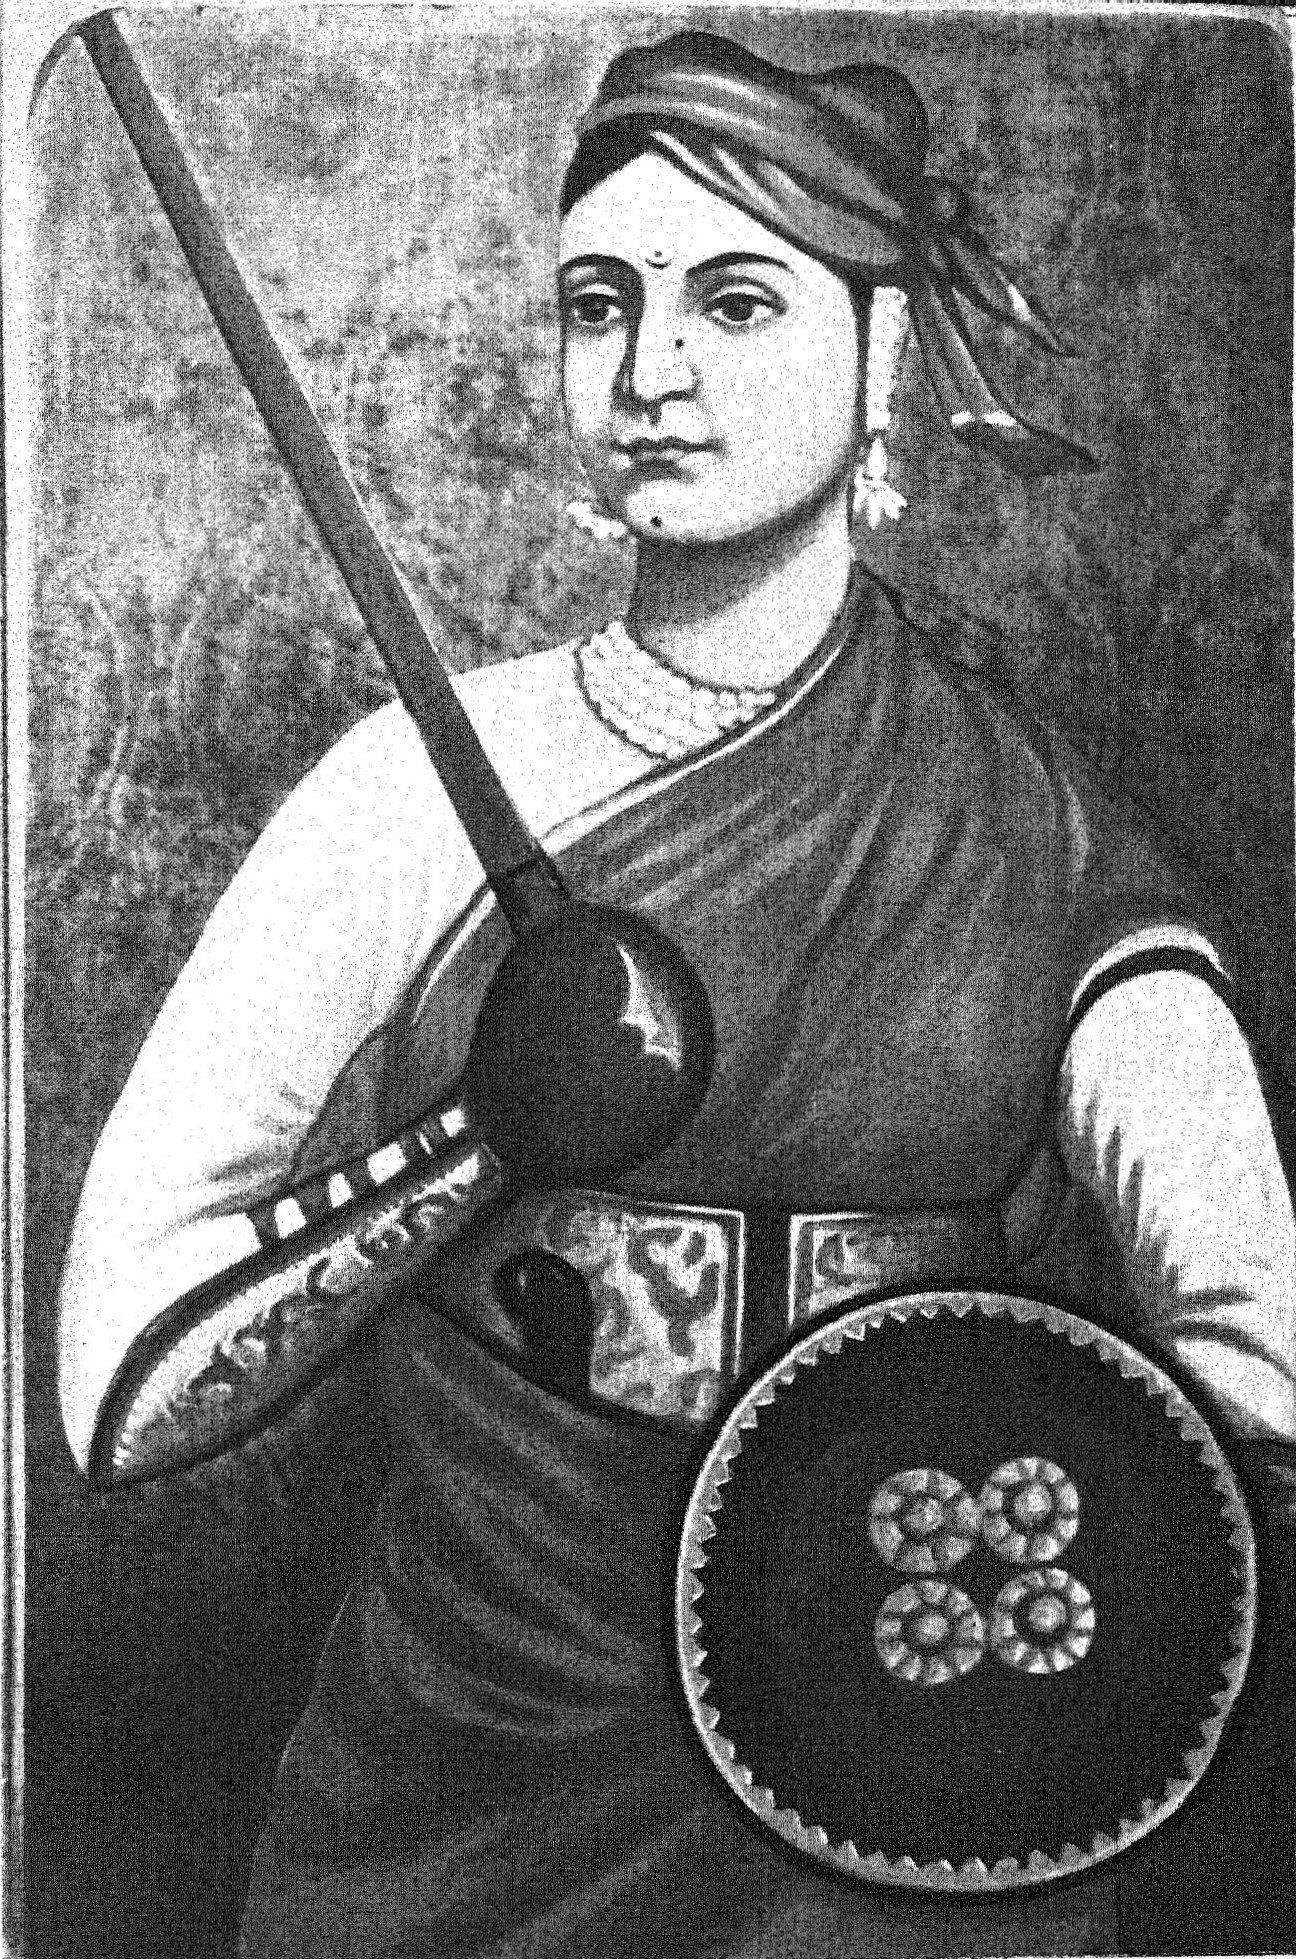 Rani lakshmi Bai